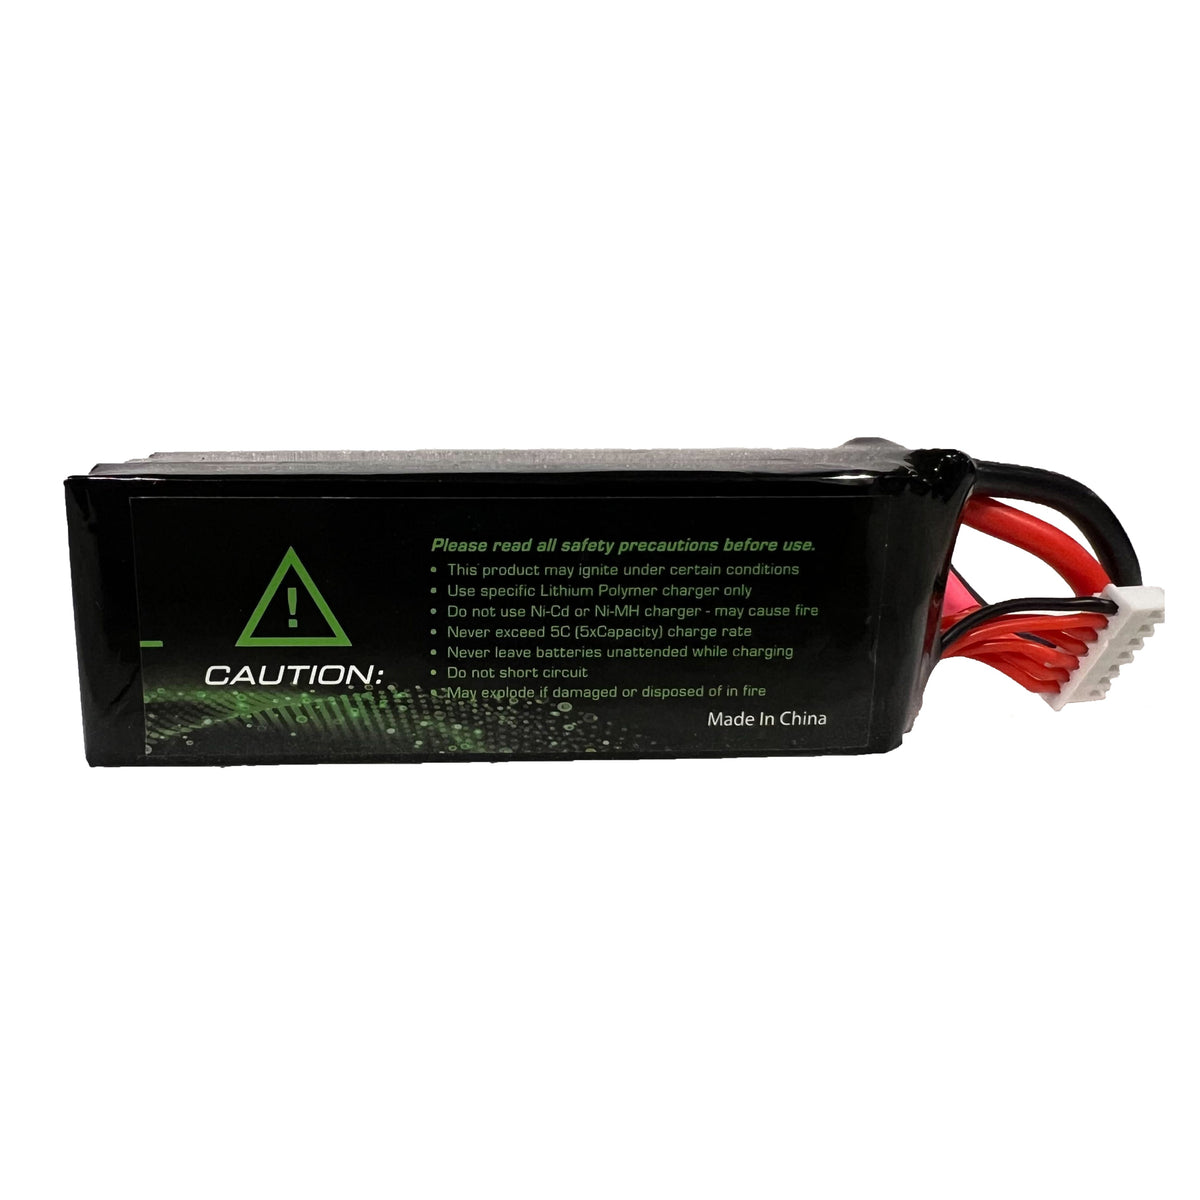 Pulse 2250mah 2S 6.6V 25C LiFePO4 Battery